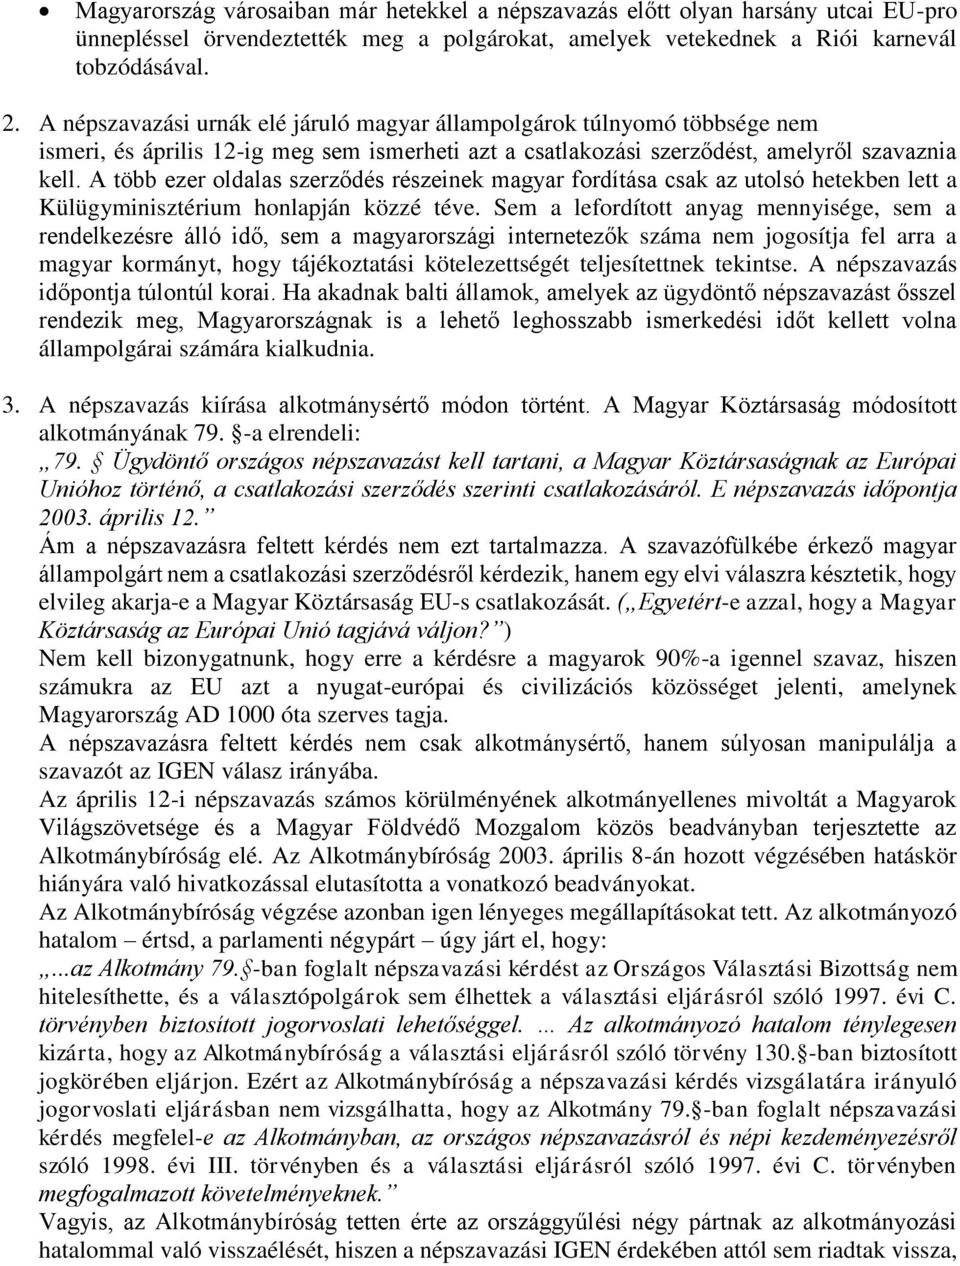 A több ezer oldalas szerződés részeinek magyar fordítása csak az utolsó hetekben lett a Külügyminisztérium honlapján közzé téve.